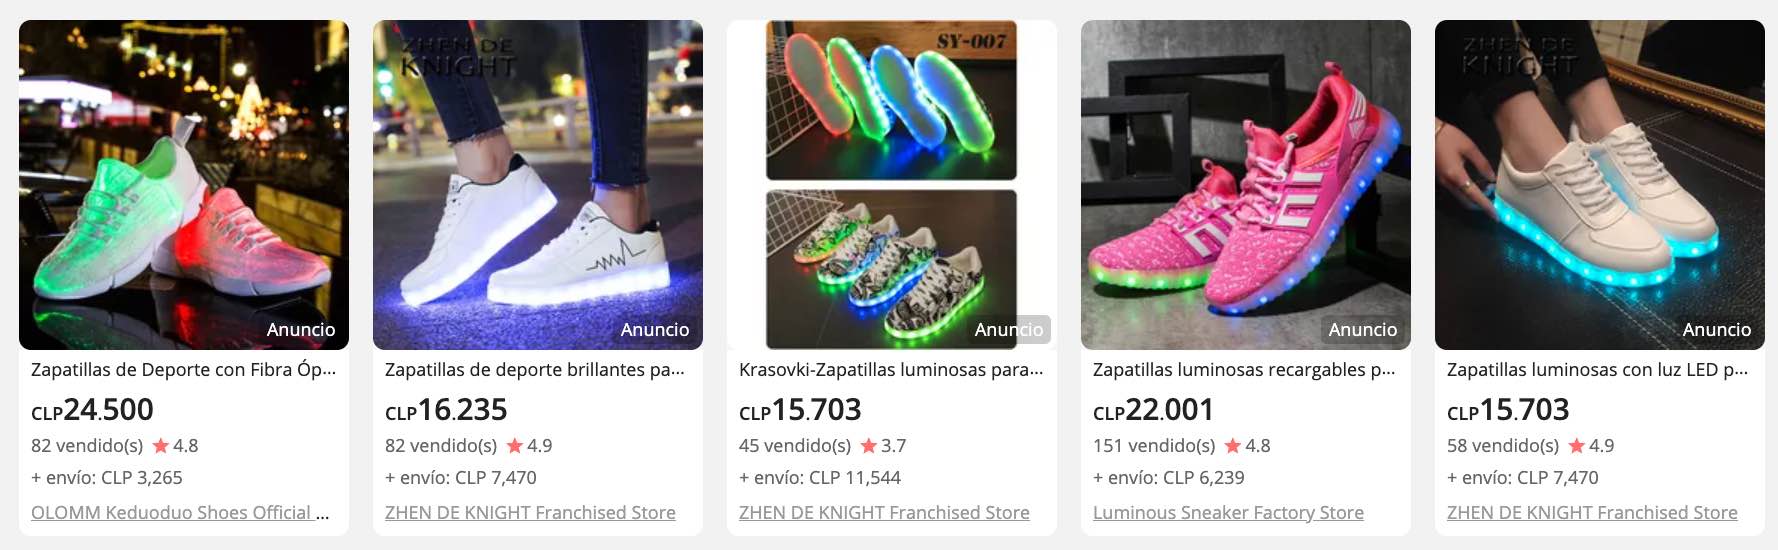 Zapatillas con luces LED en aliexpress